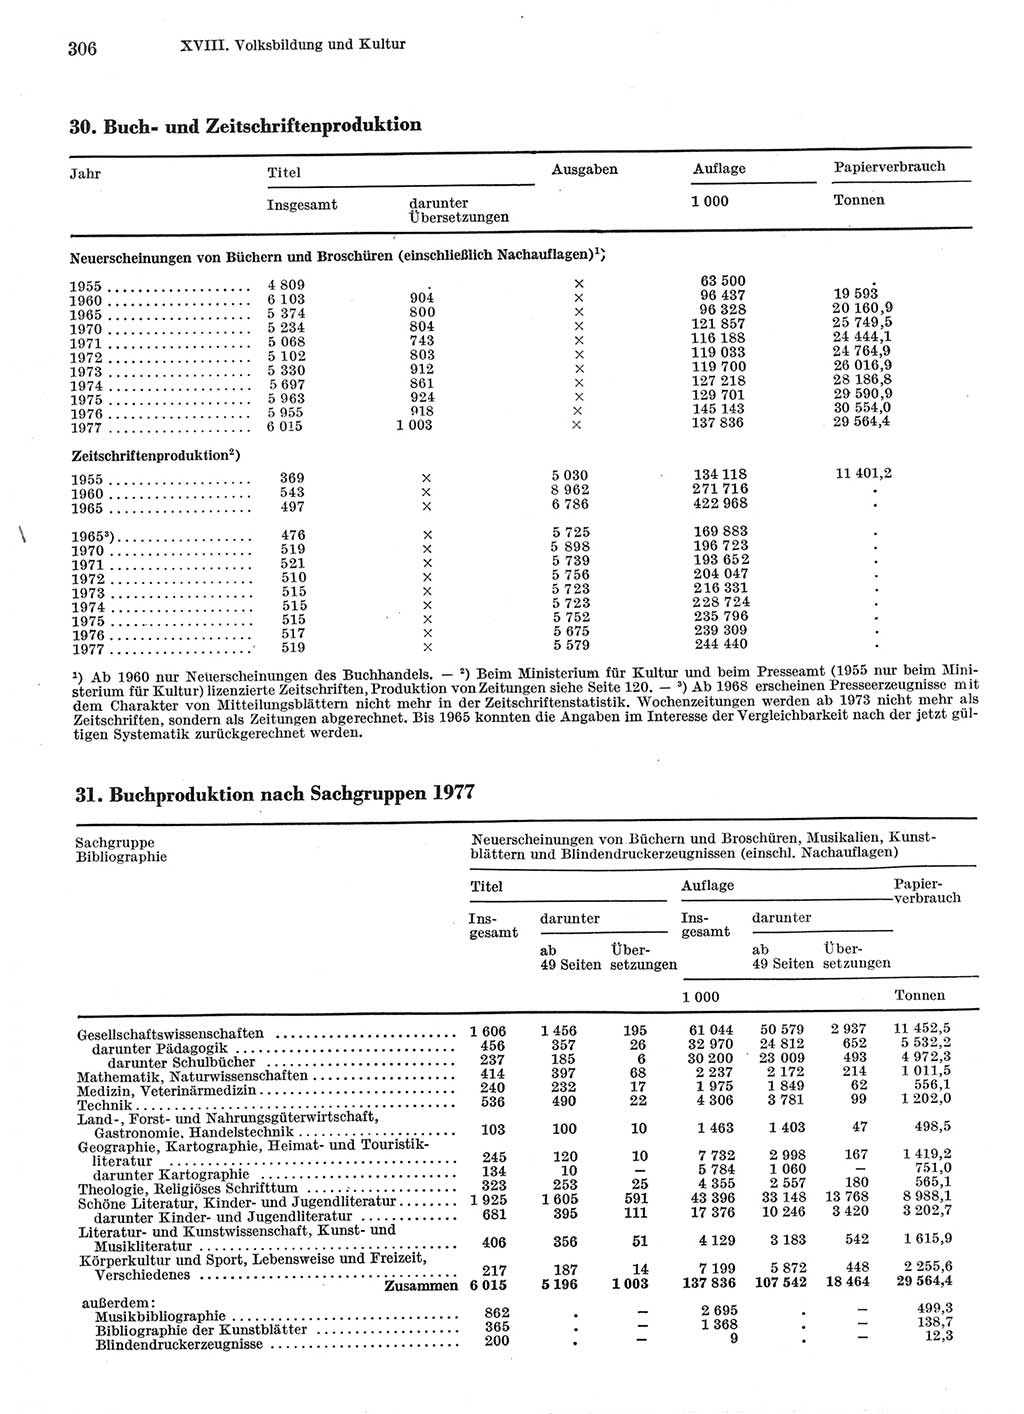 Statistisches Jahrbuch der Deutschen Demokratischen Republik (DDR) 1978, Seite 306 (Stat. Jb. DDR 1978, S. 306)